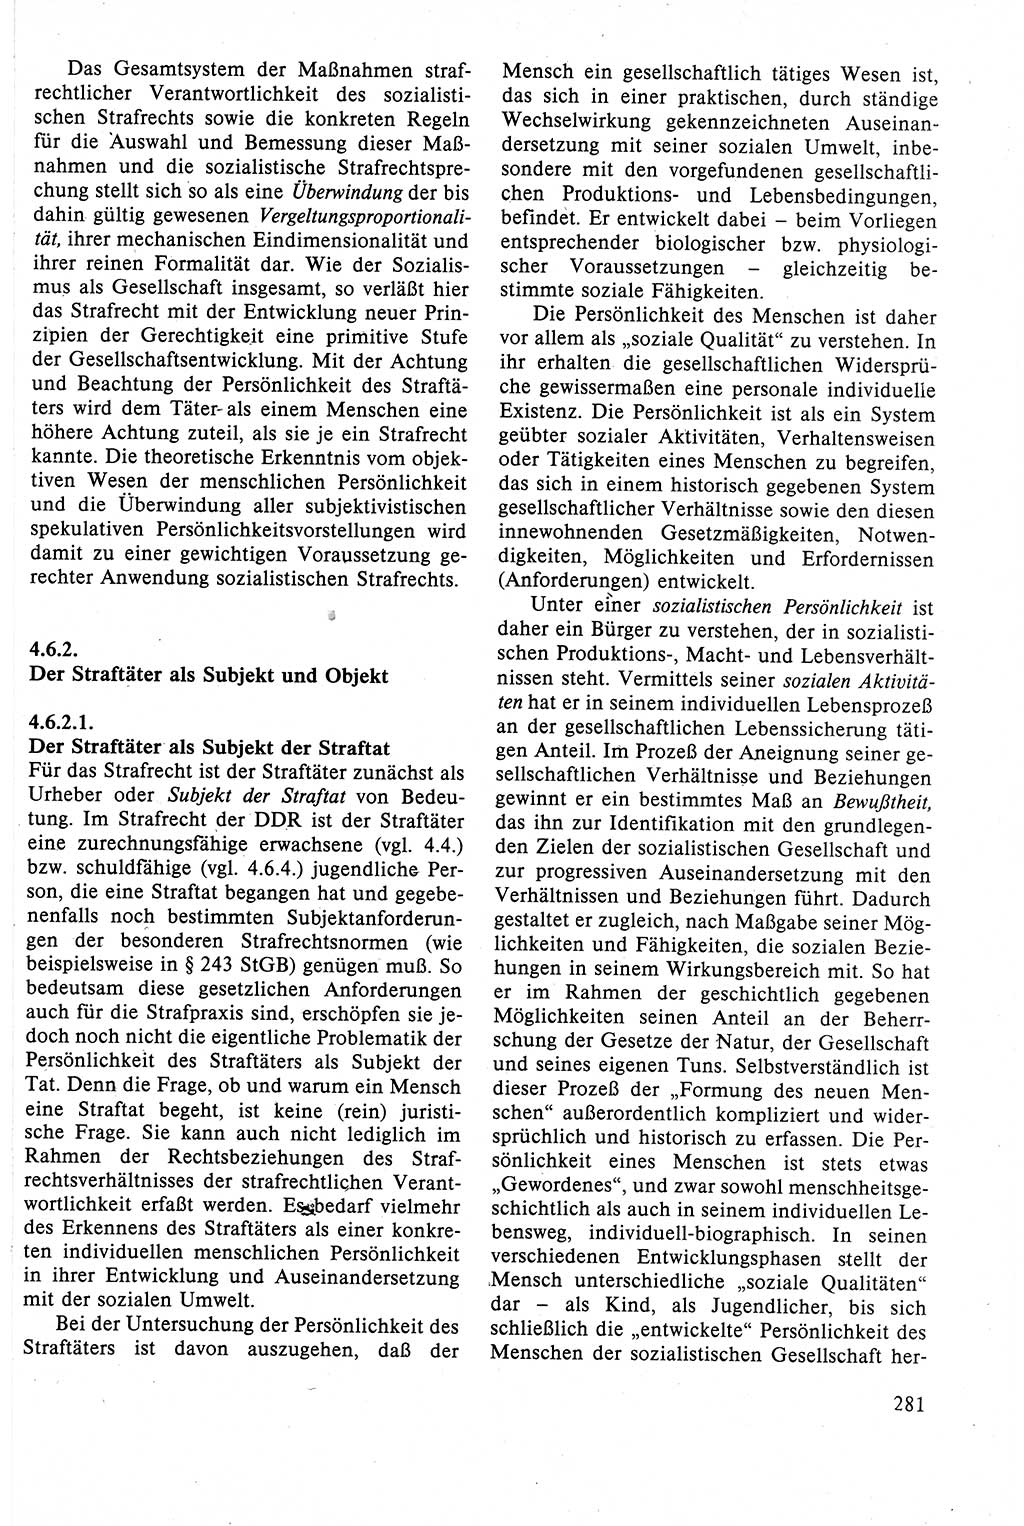 Strafrecht der DDR (Deutsche Demokratische Republik), Lehrbuch 1988, Seite 281 (Strafr. DDR Lb. 1988, S. 281)